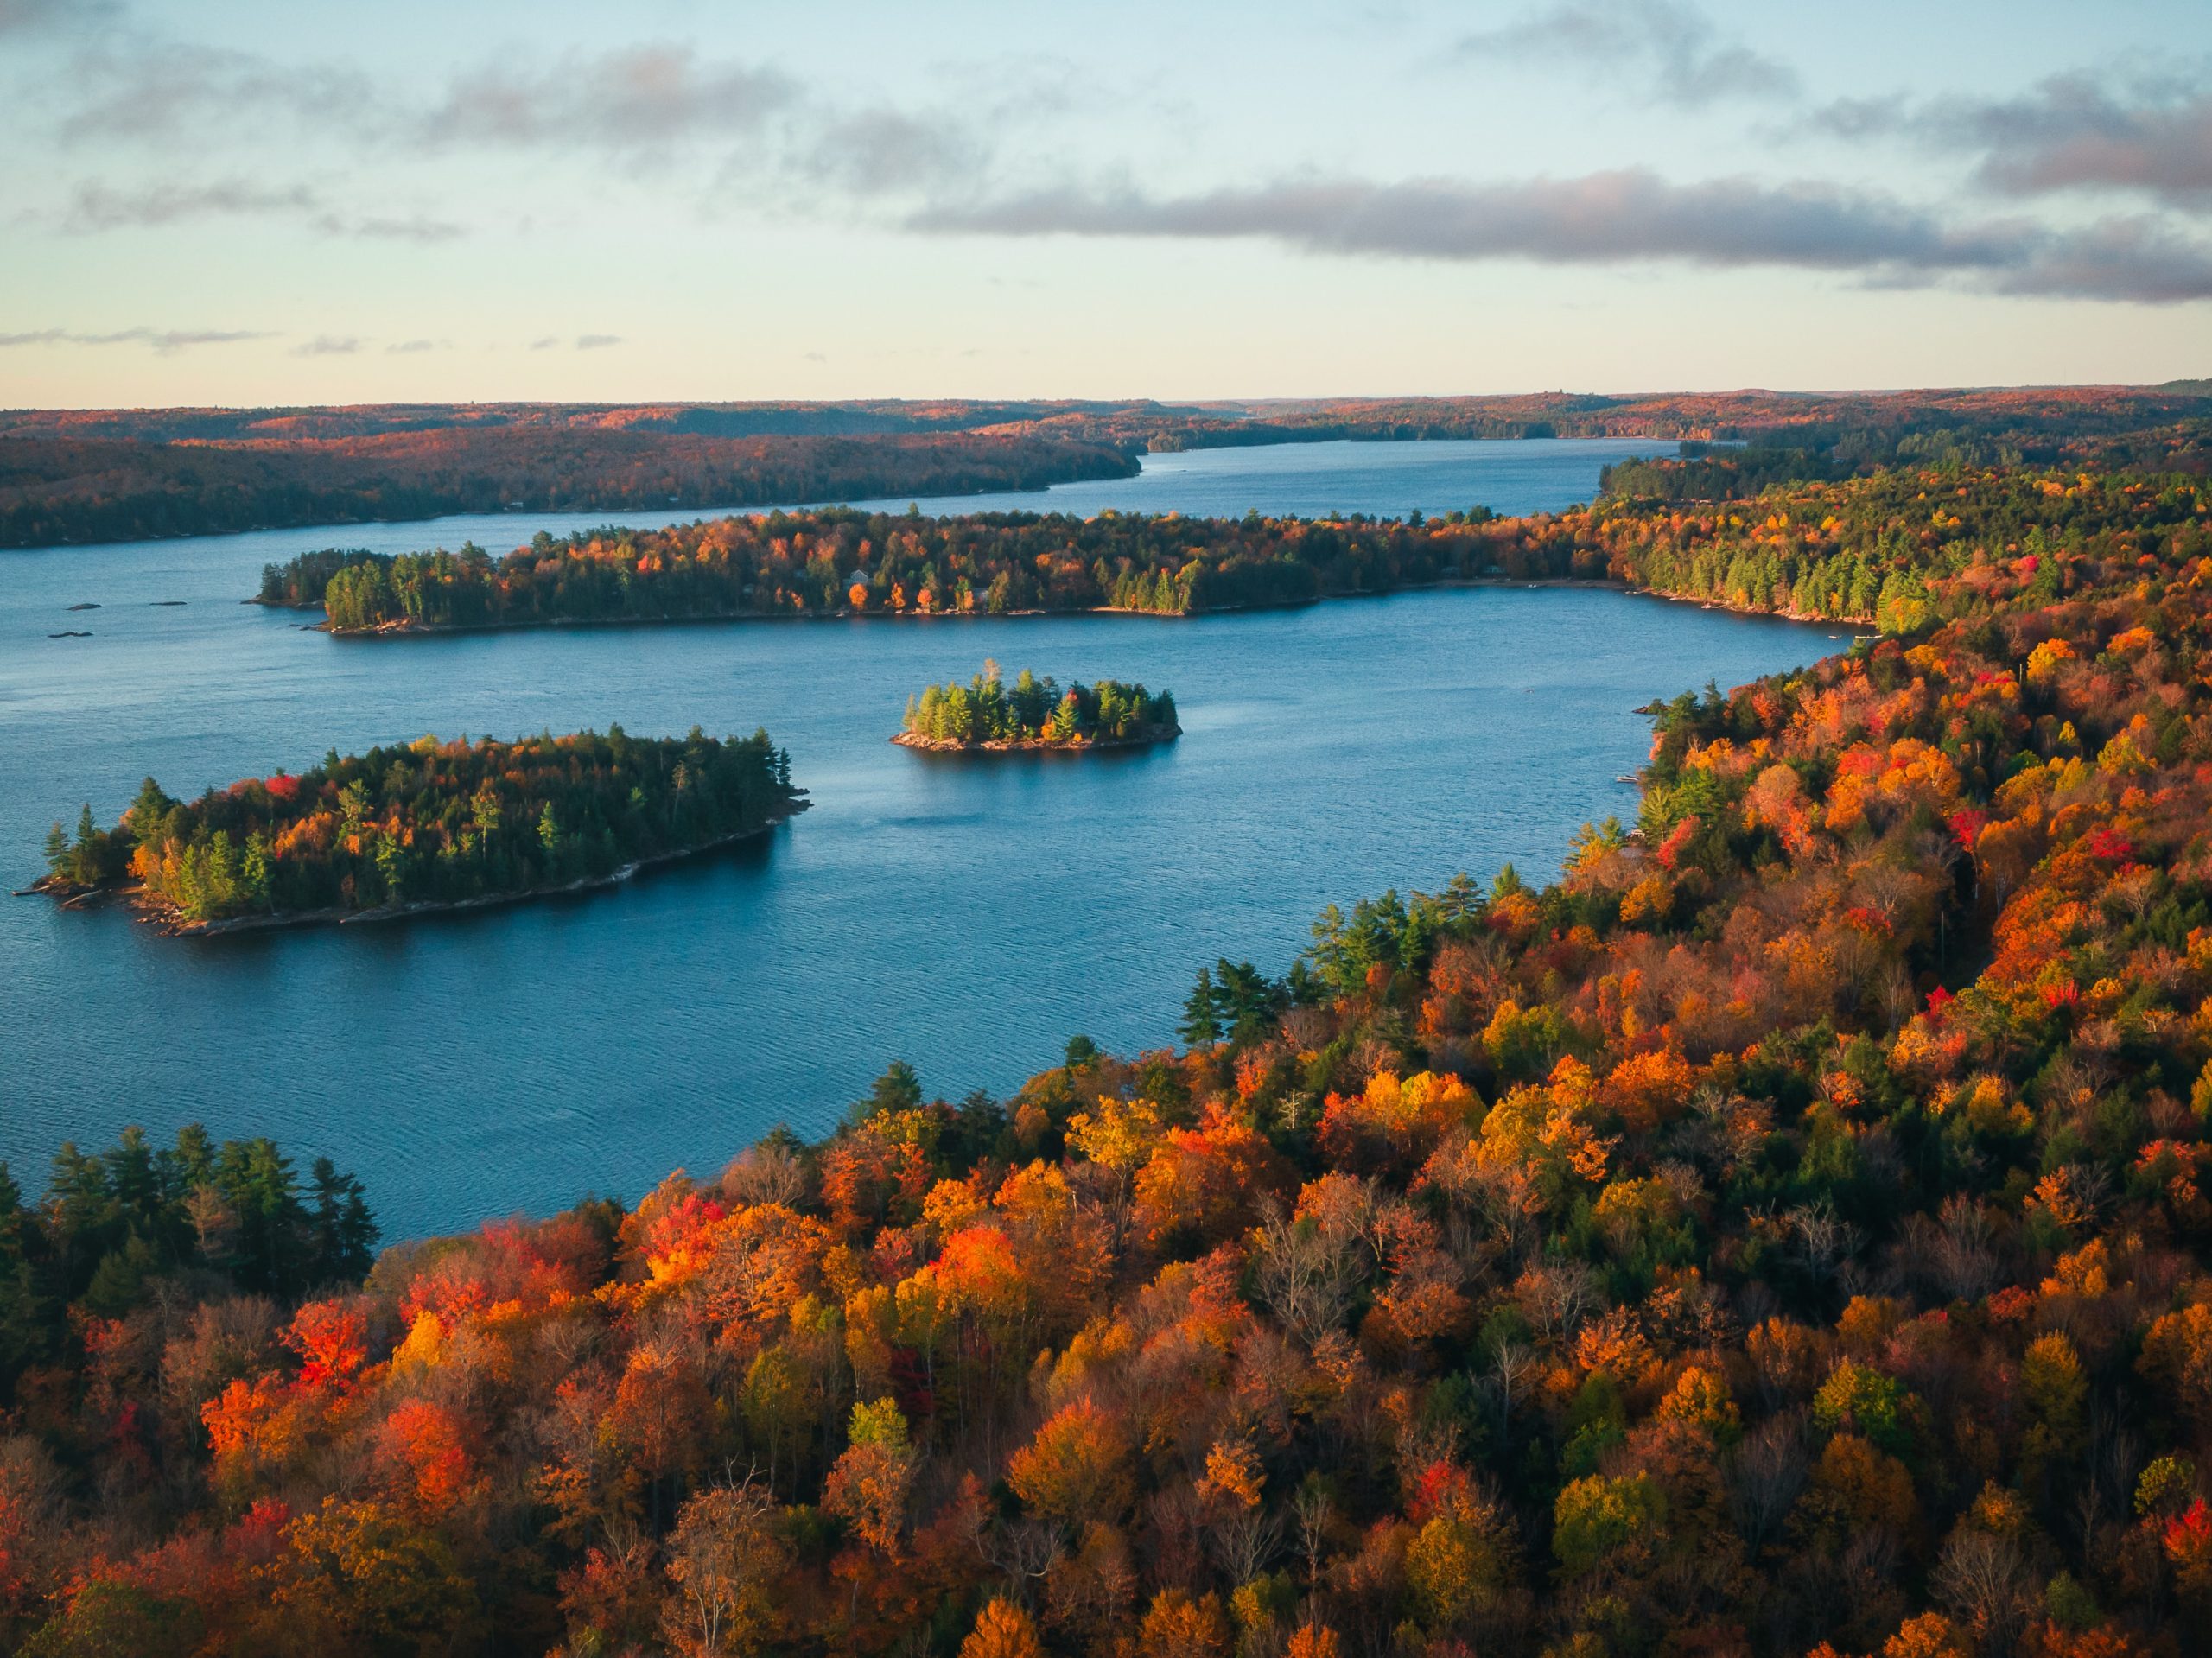 Vue sur les arbres d'automne, le lac, les îles et le ciel